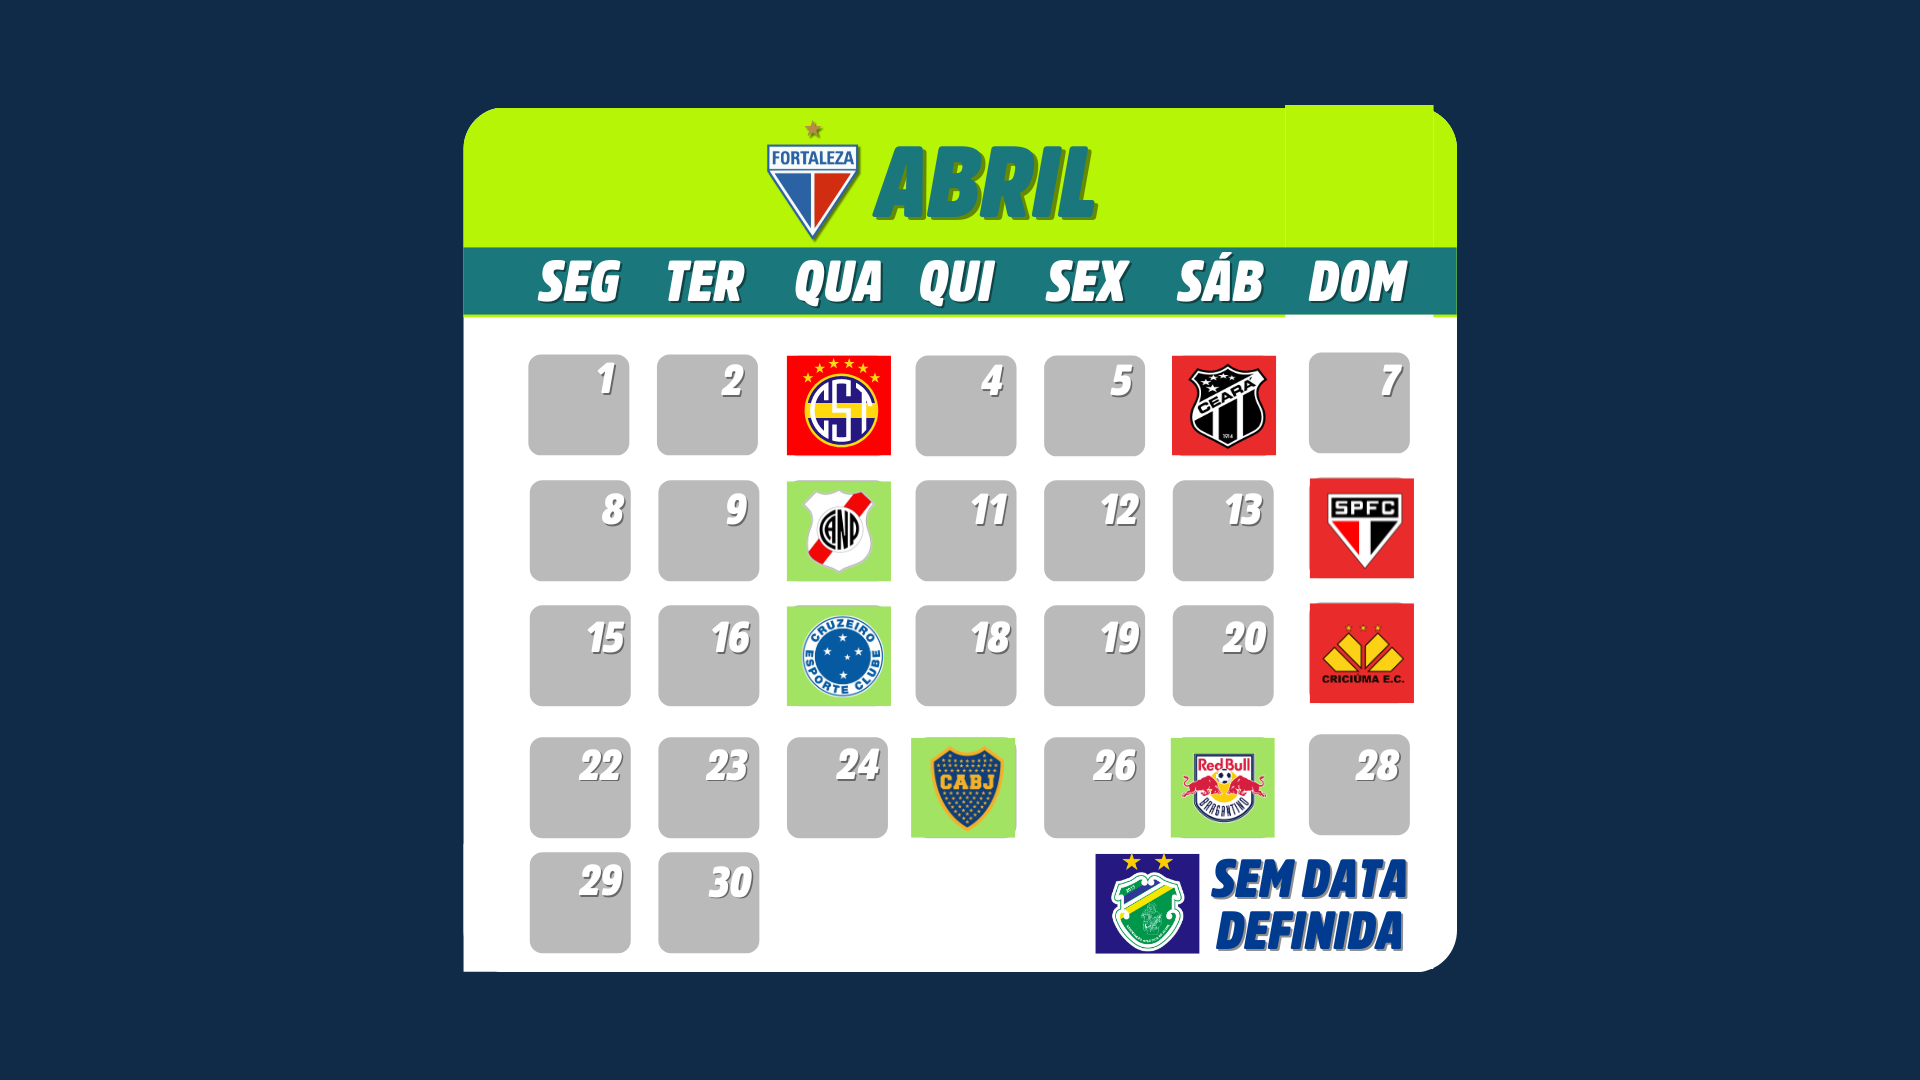 Imagem de uma tela contendo os jogos do Fortaleza no mês de Abril